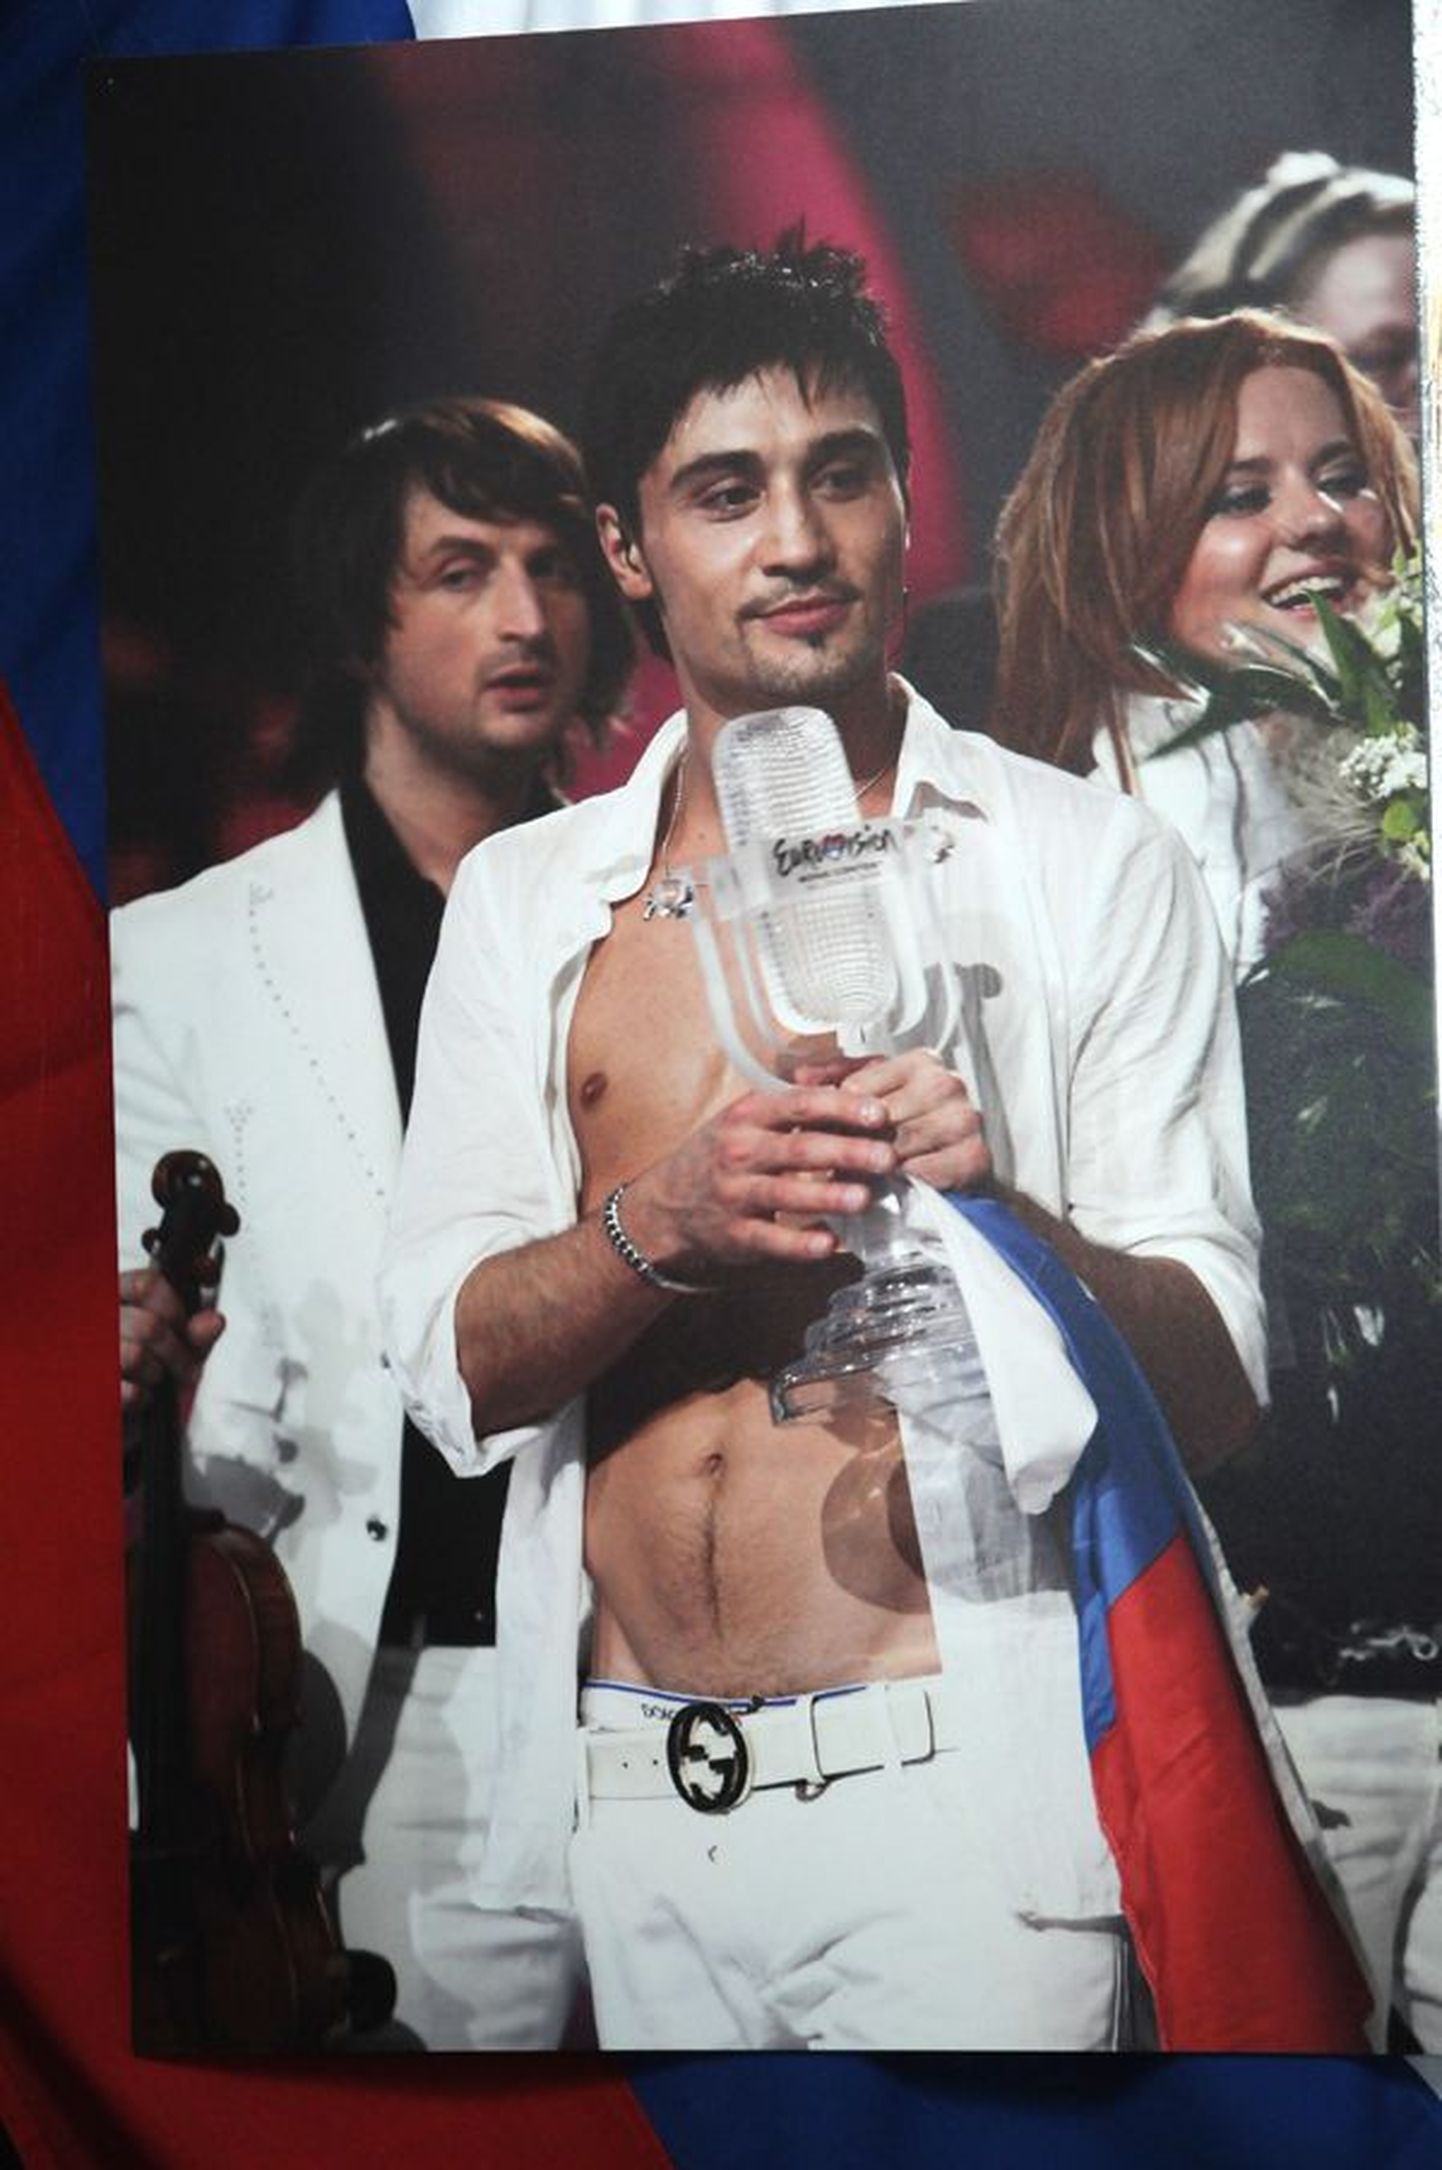 Indrek Galetini näituse "Eurovisiooni parimad hetked" avamine klubis "LoveSexMoney", 19.02.2009